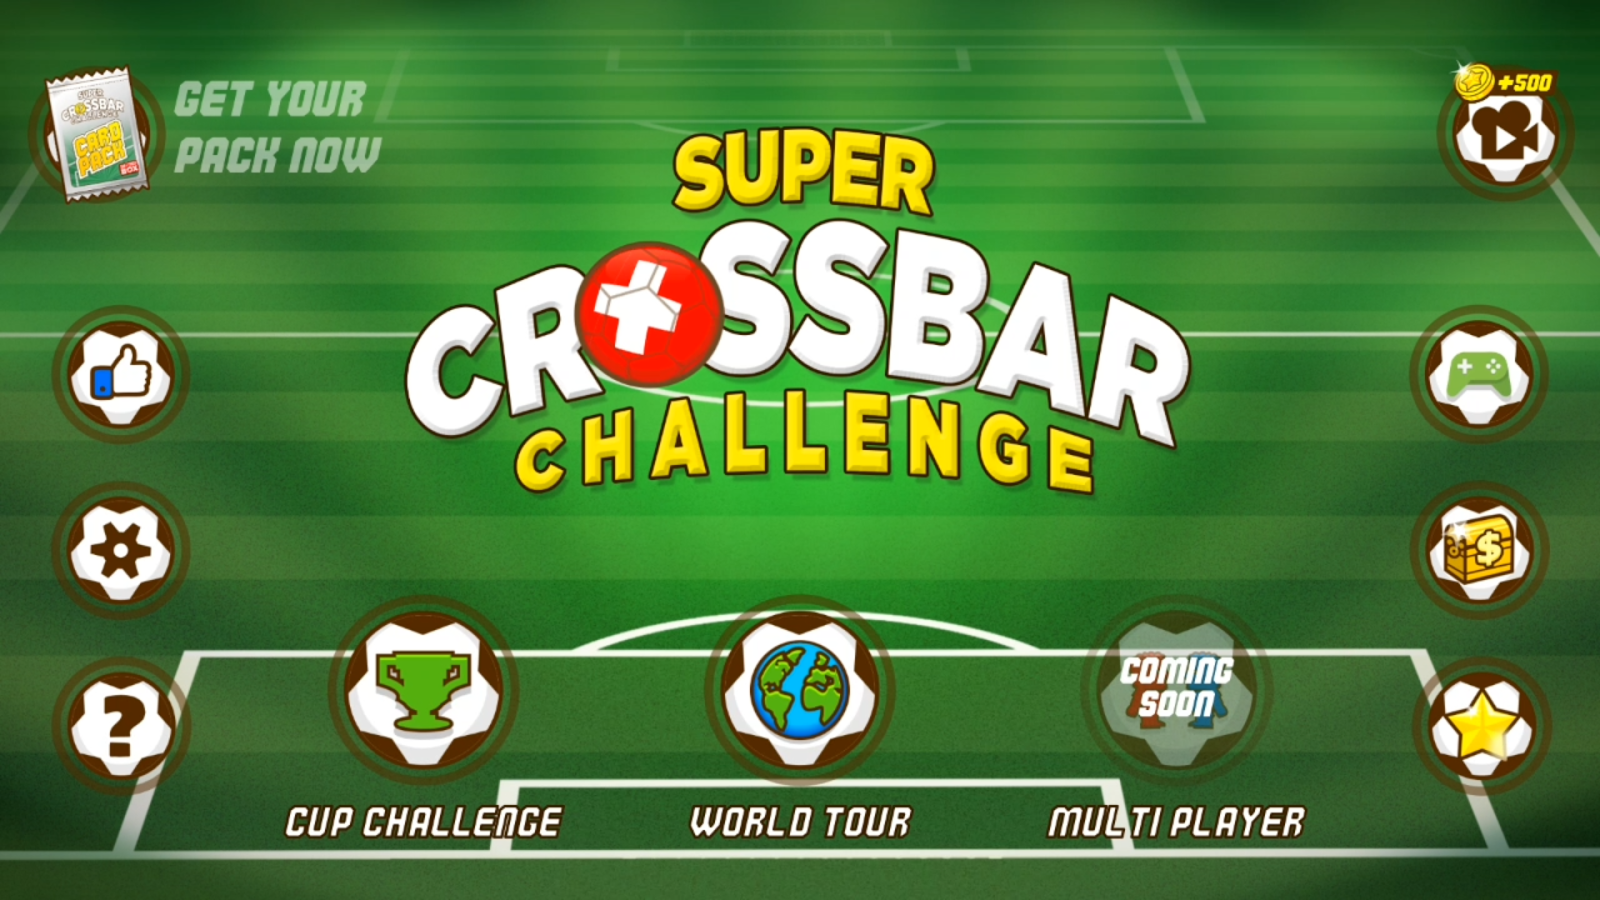 Super Crossbar Challenge